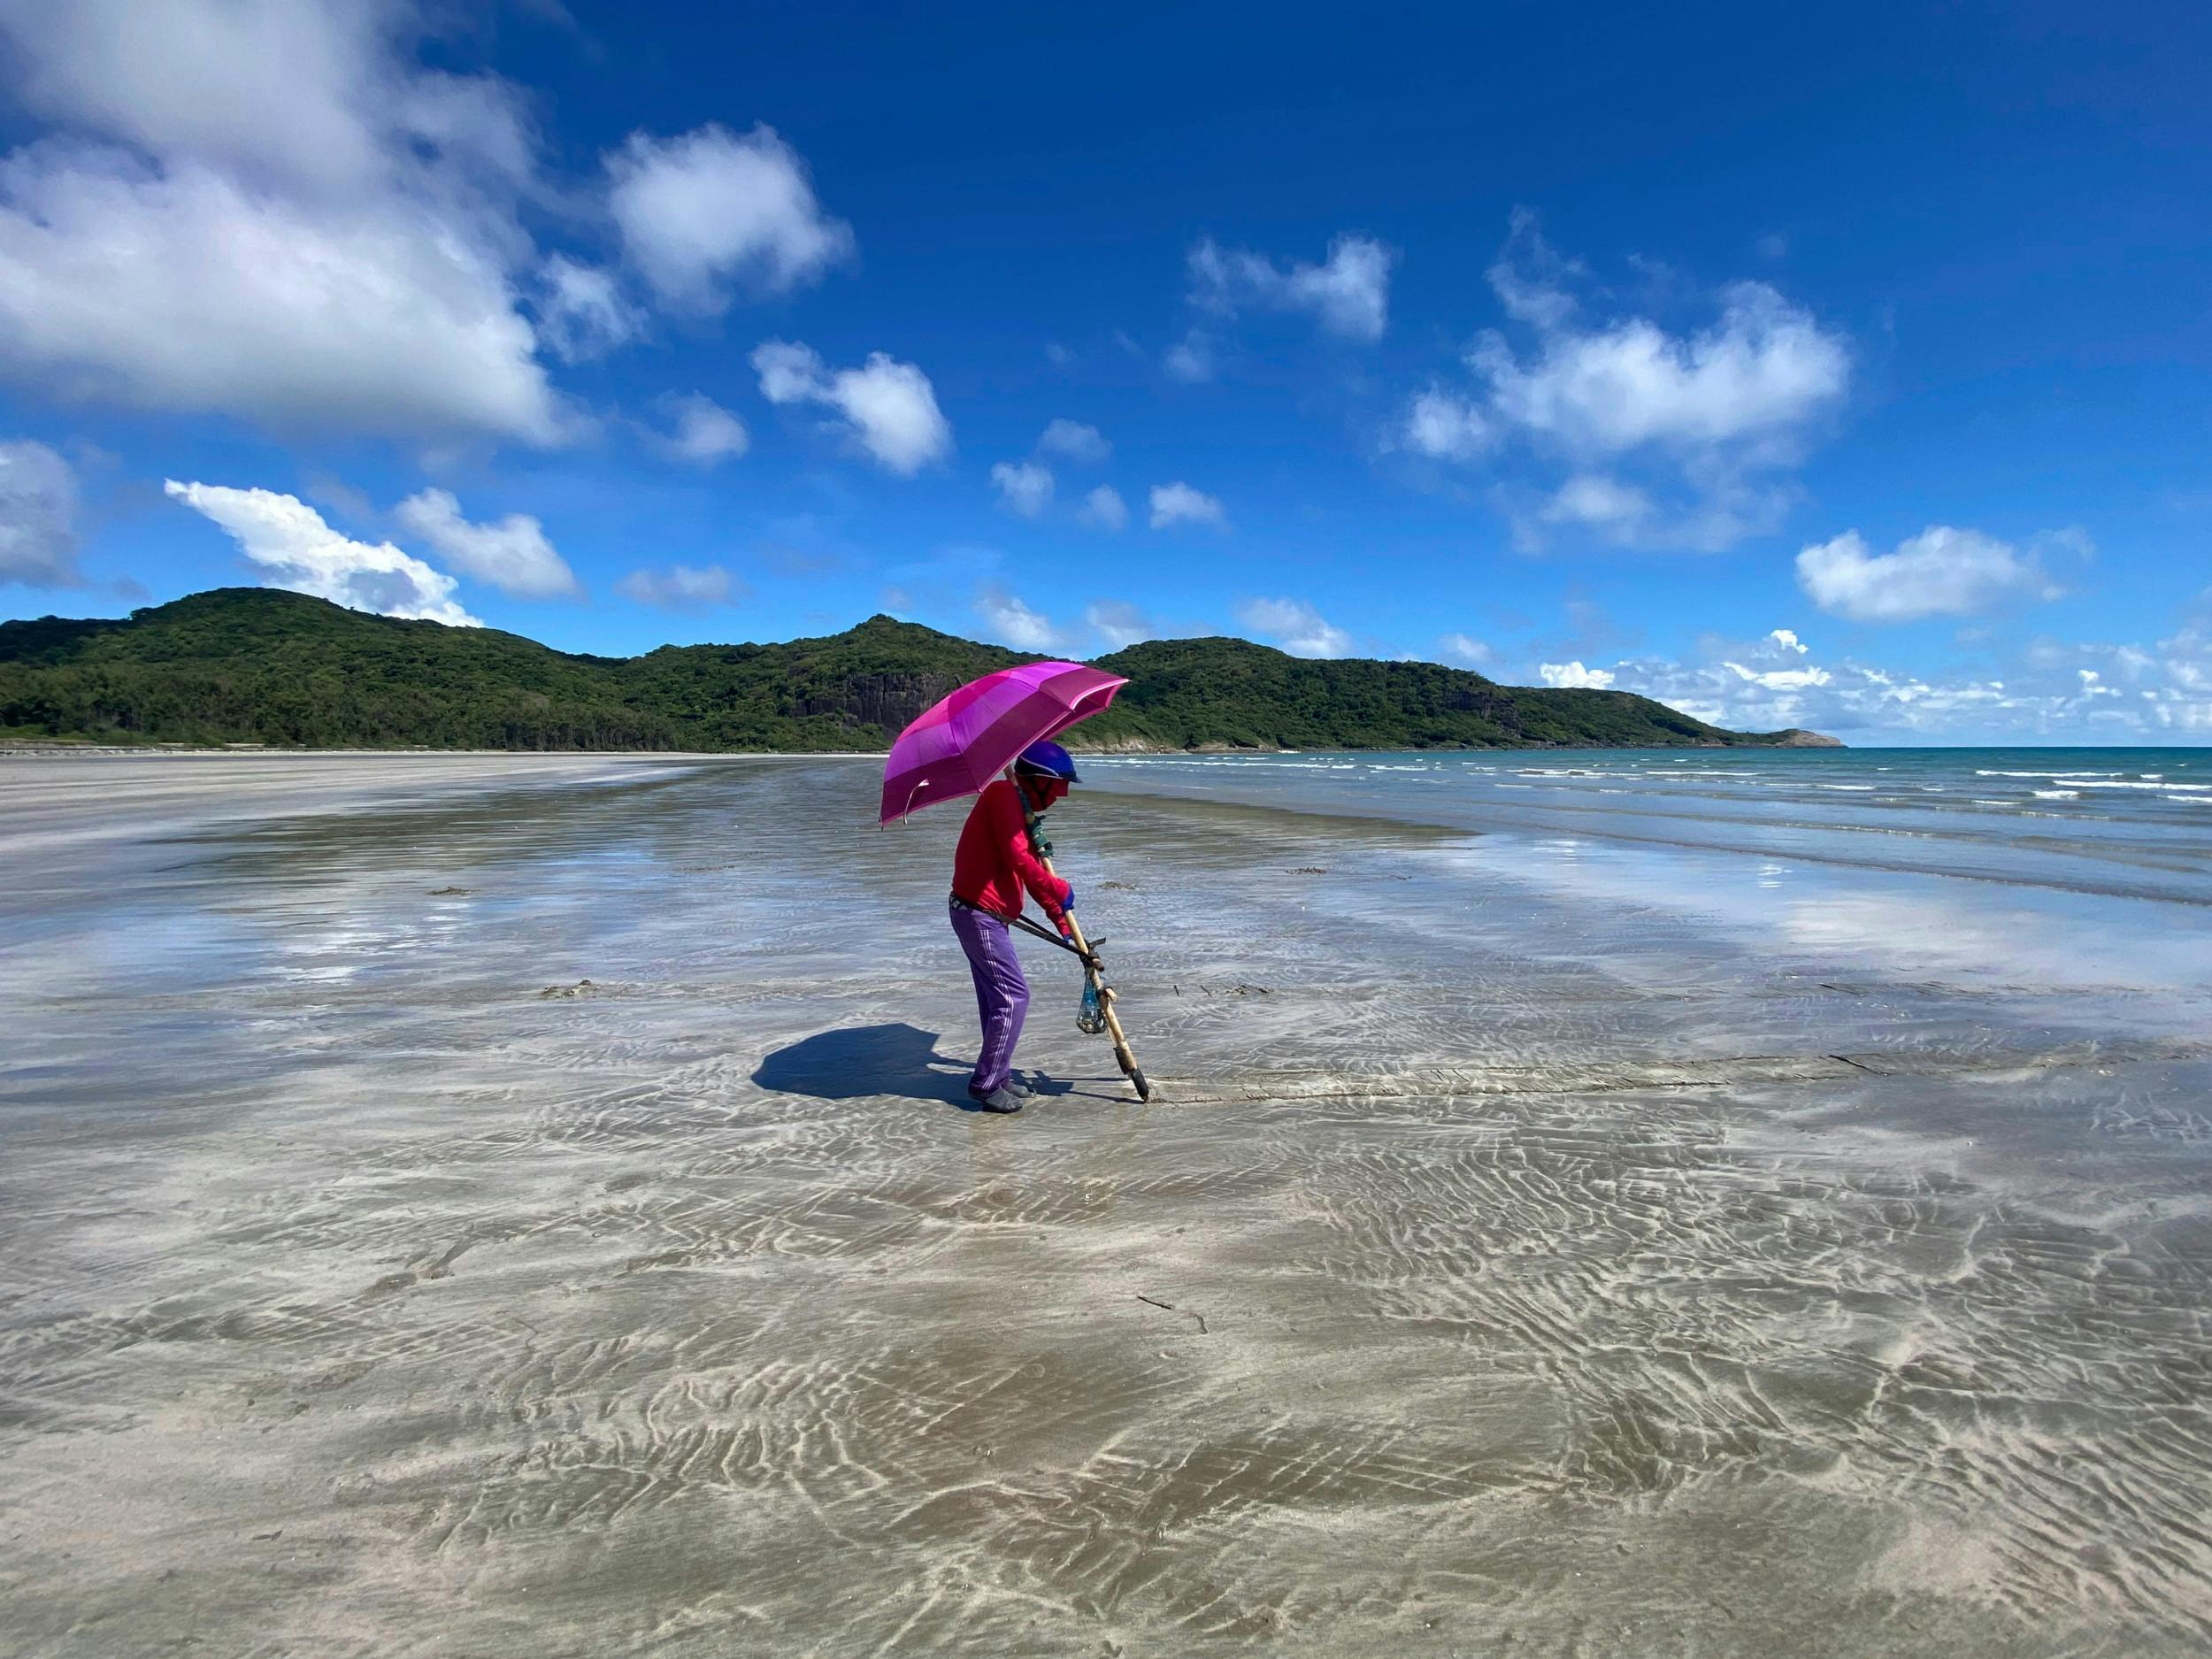 Vong Beach er mere end en kilometer lang. De eneste andre strandgæster er vietnamesiske kvinder, som tålmodigt leder efter muslinger. De er helt tildækkede for at være i ly for de hidsige solstråler.